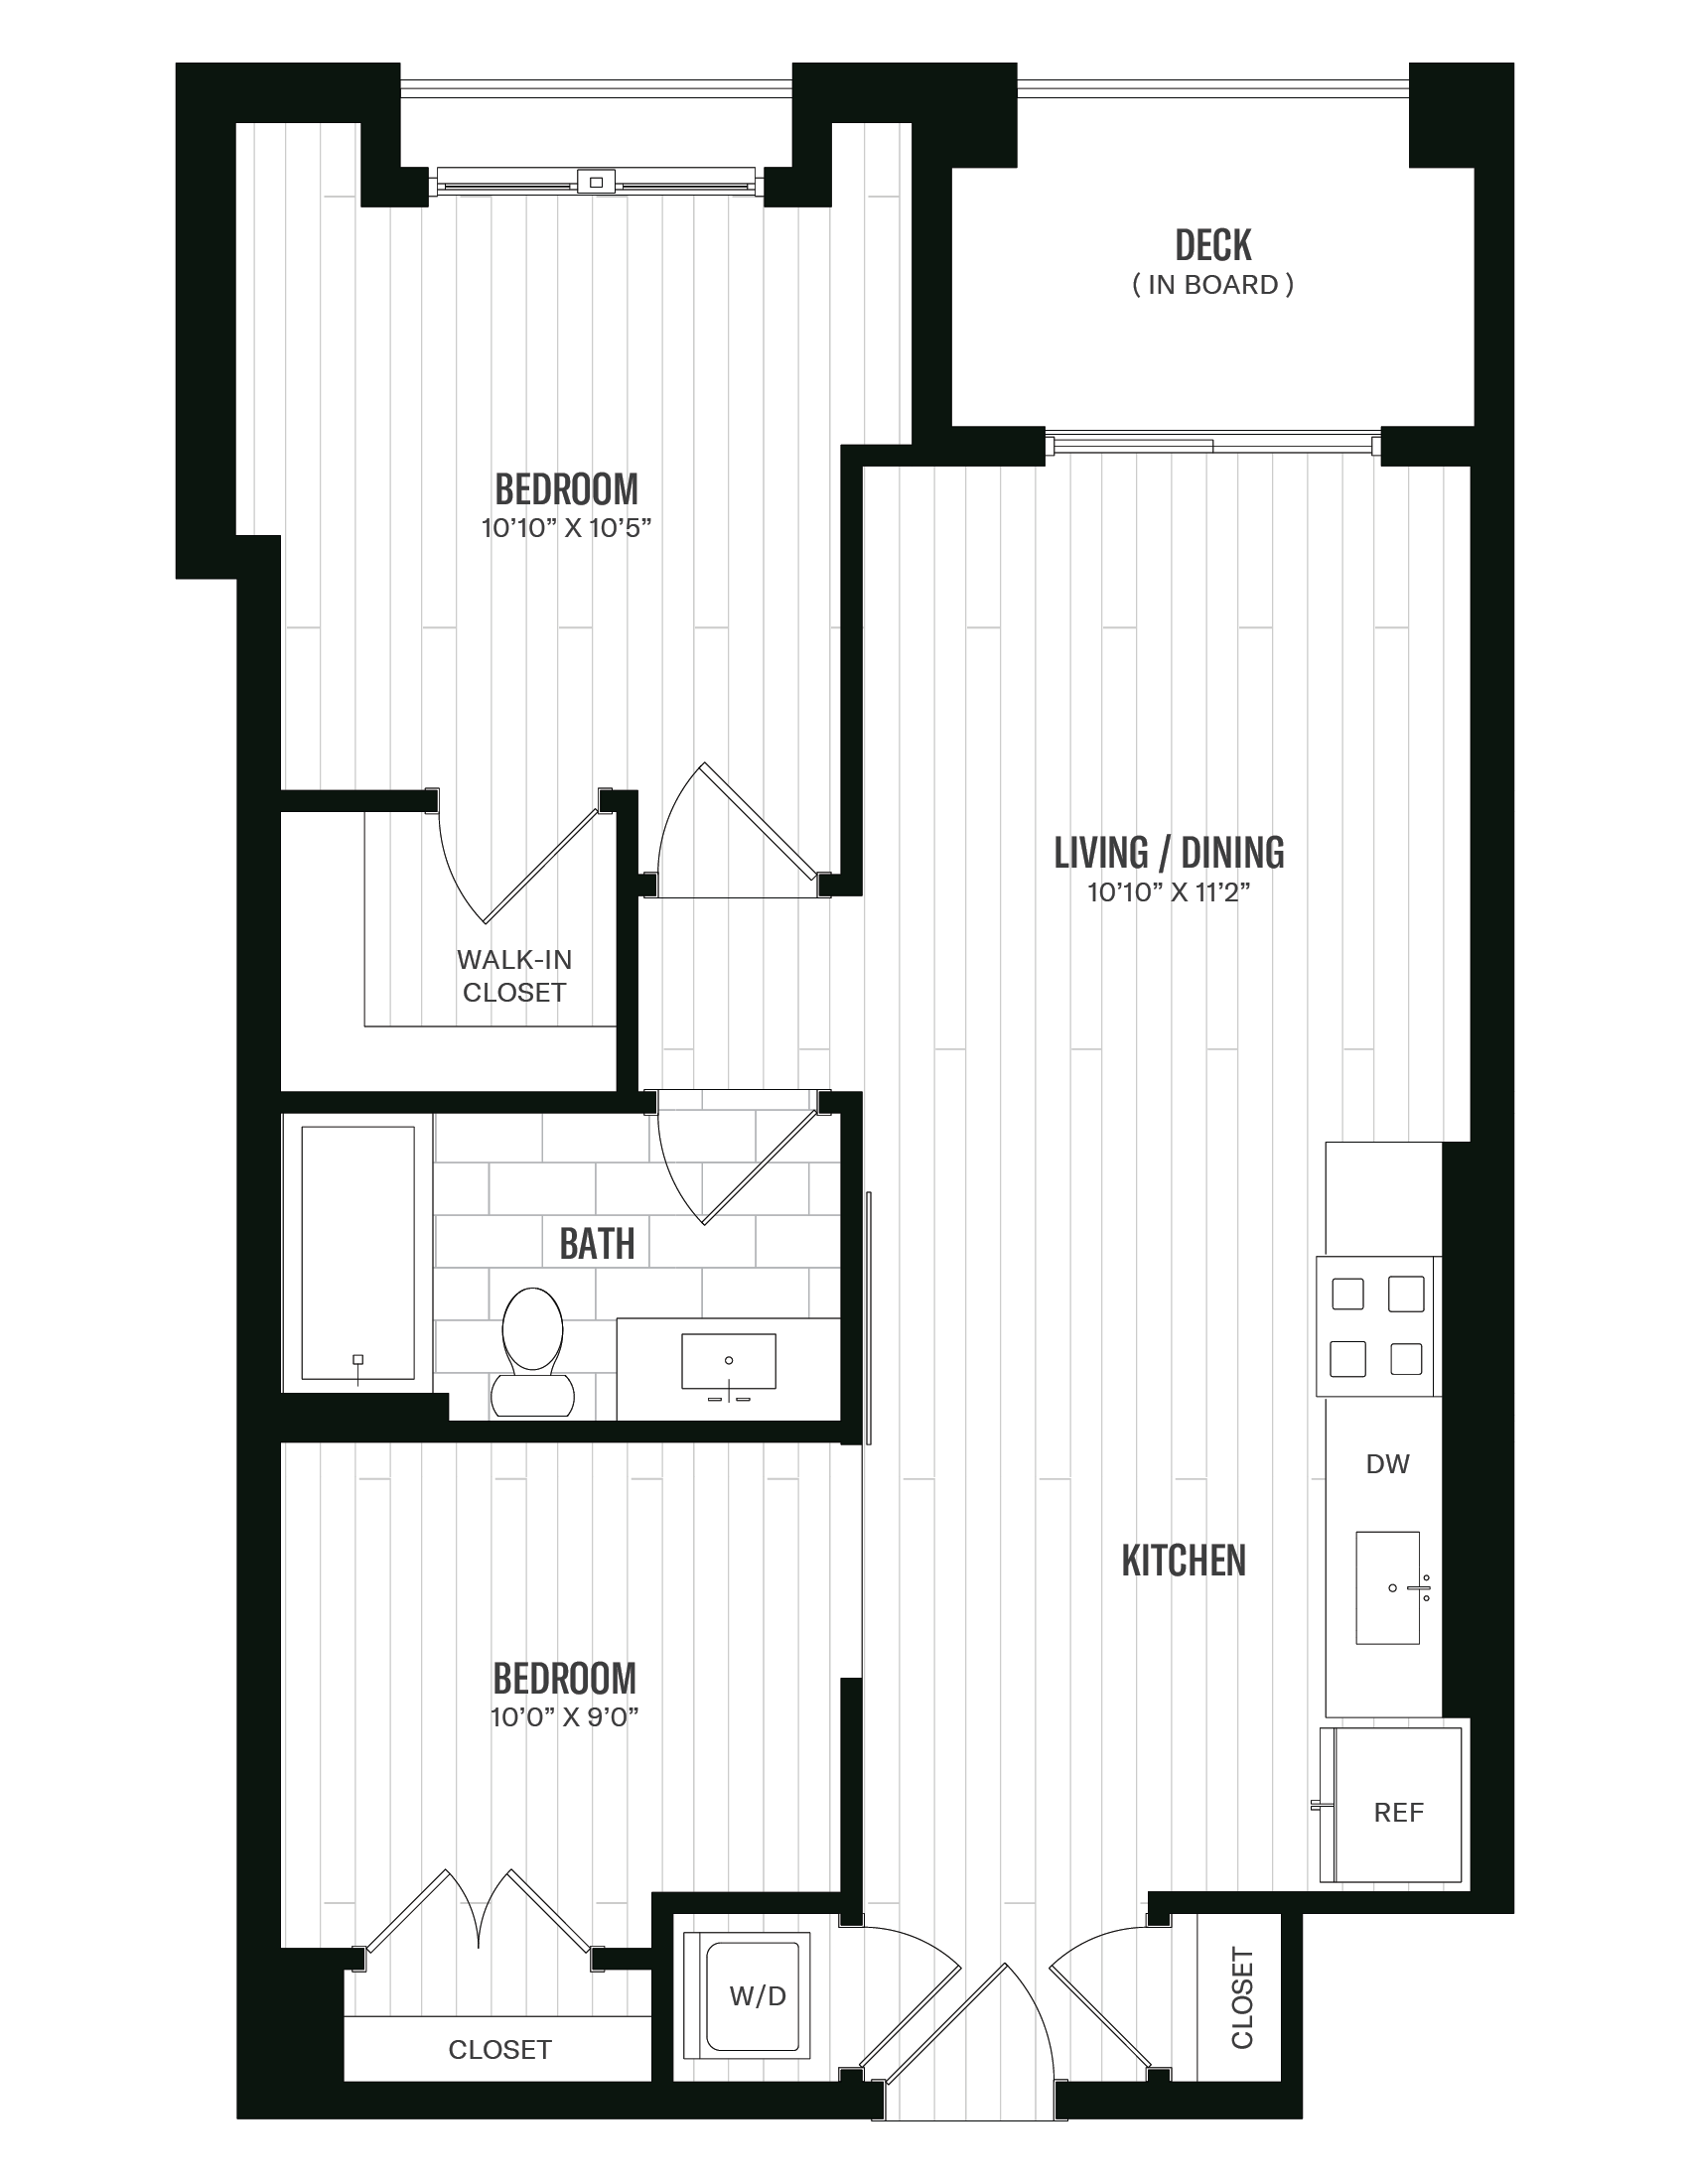 Floorplan image of unit 342